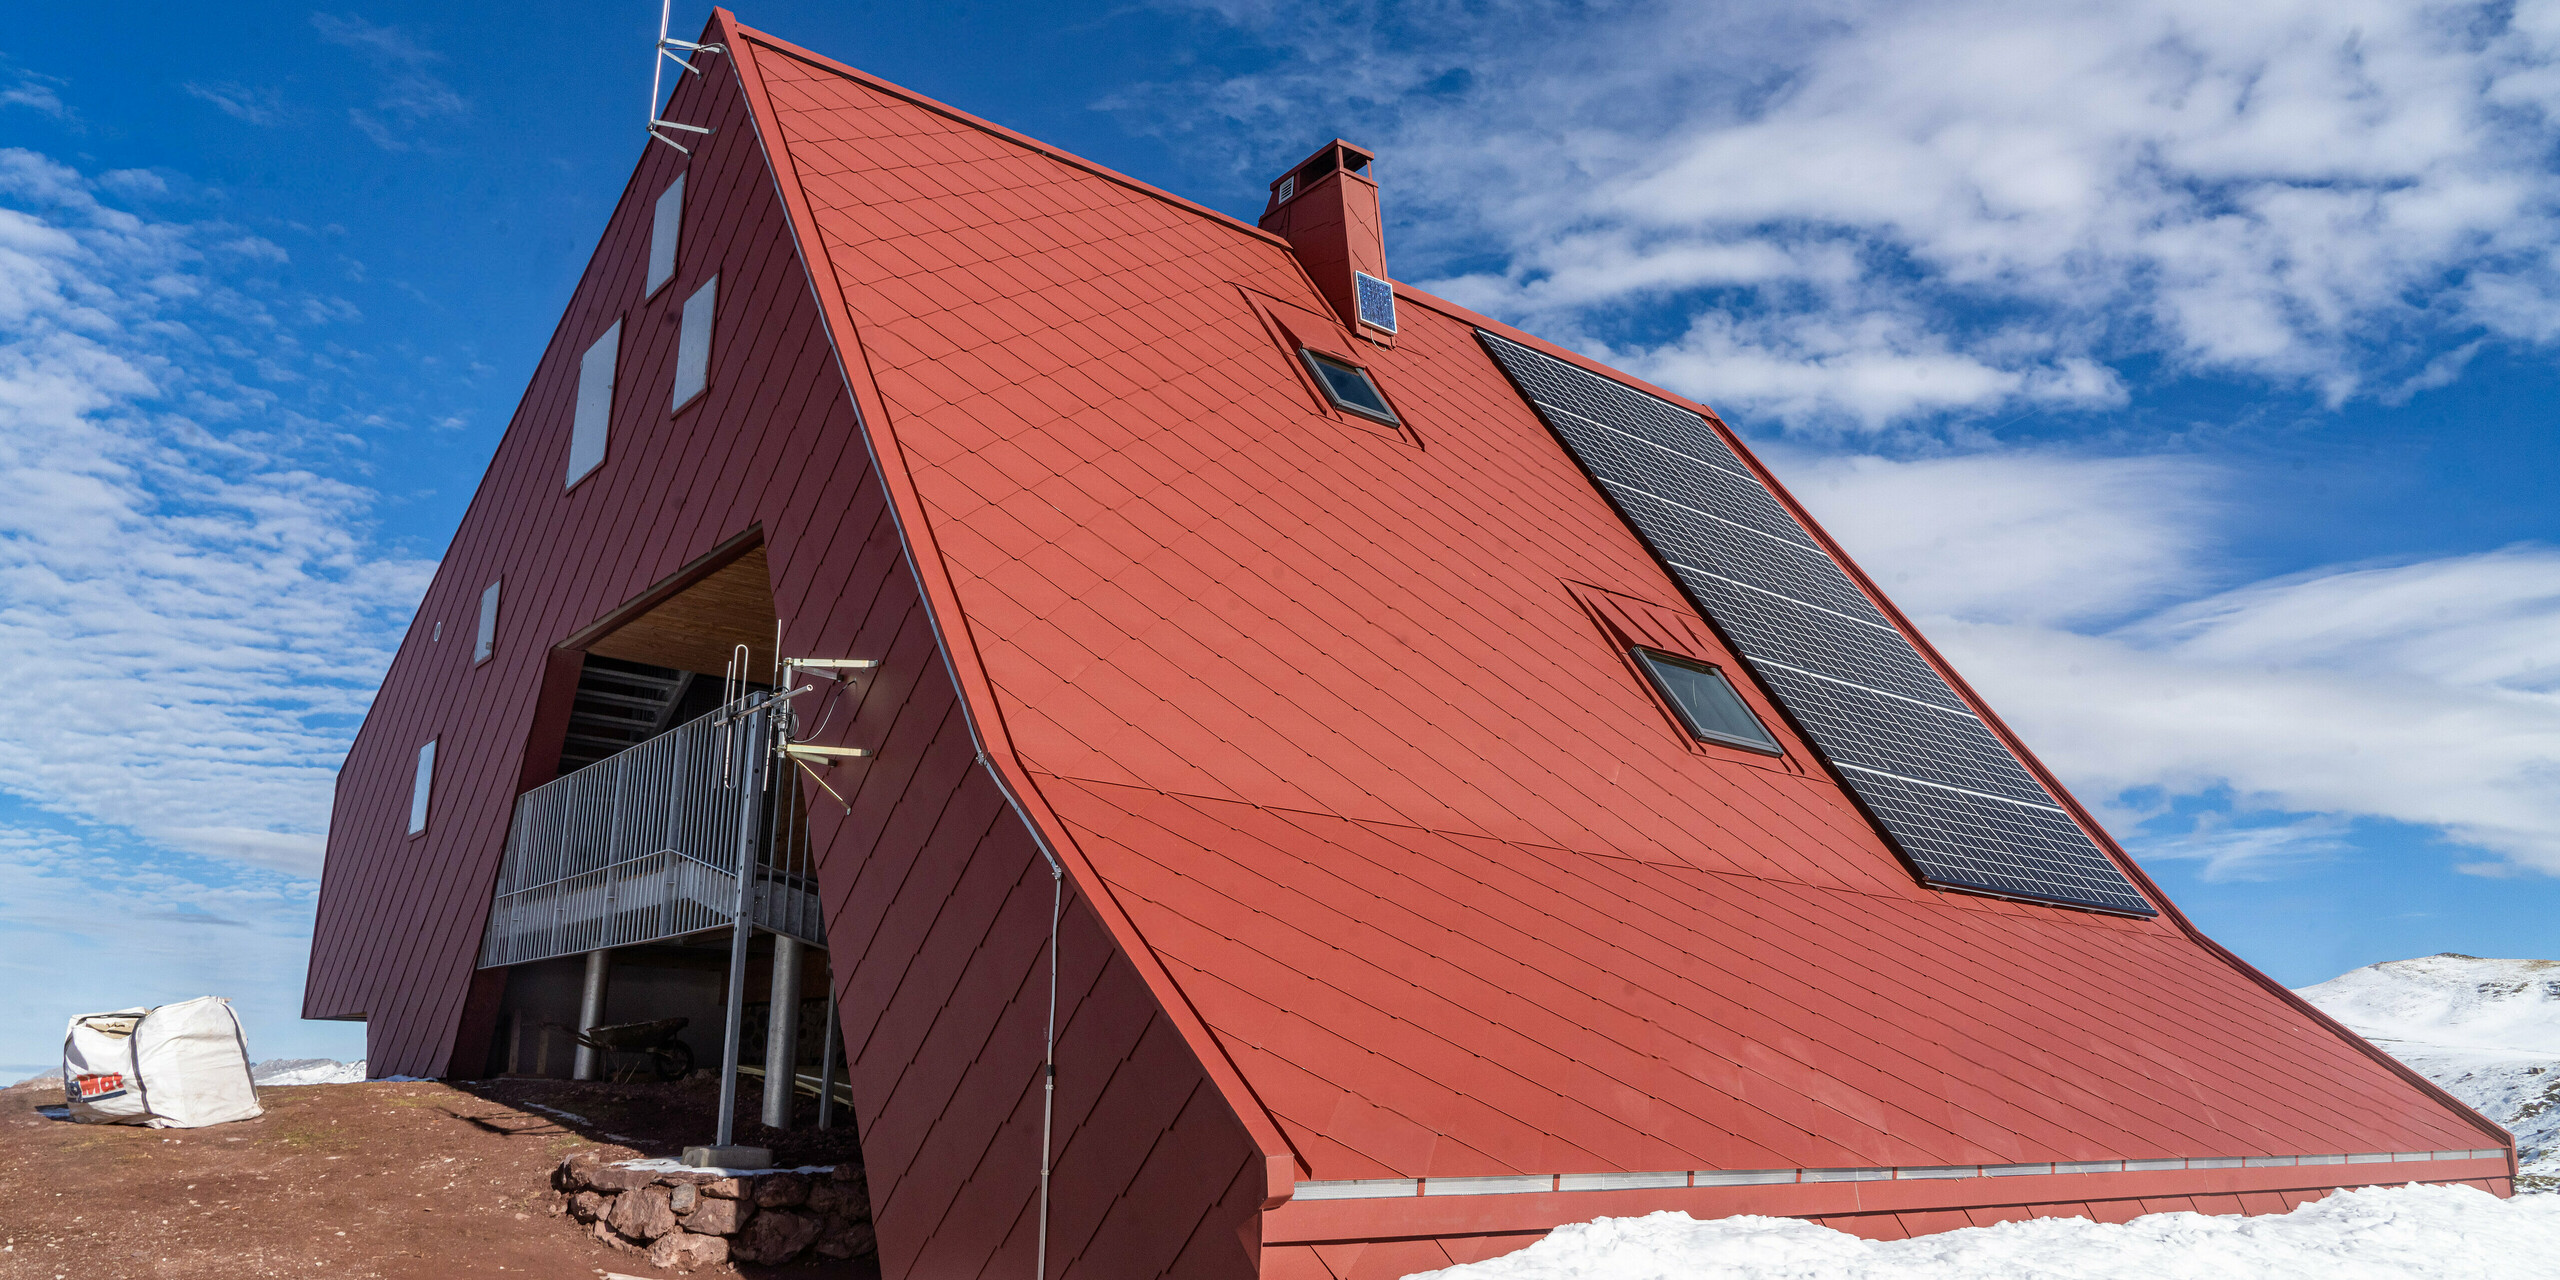 Refuge d'Arlet dans le Parc National des Pyrénées avec une coque de bâtiment en aluminium de couleur rouge oxyde